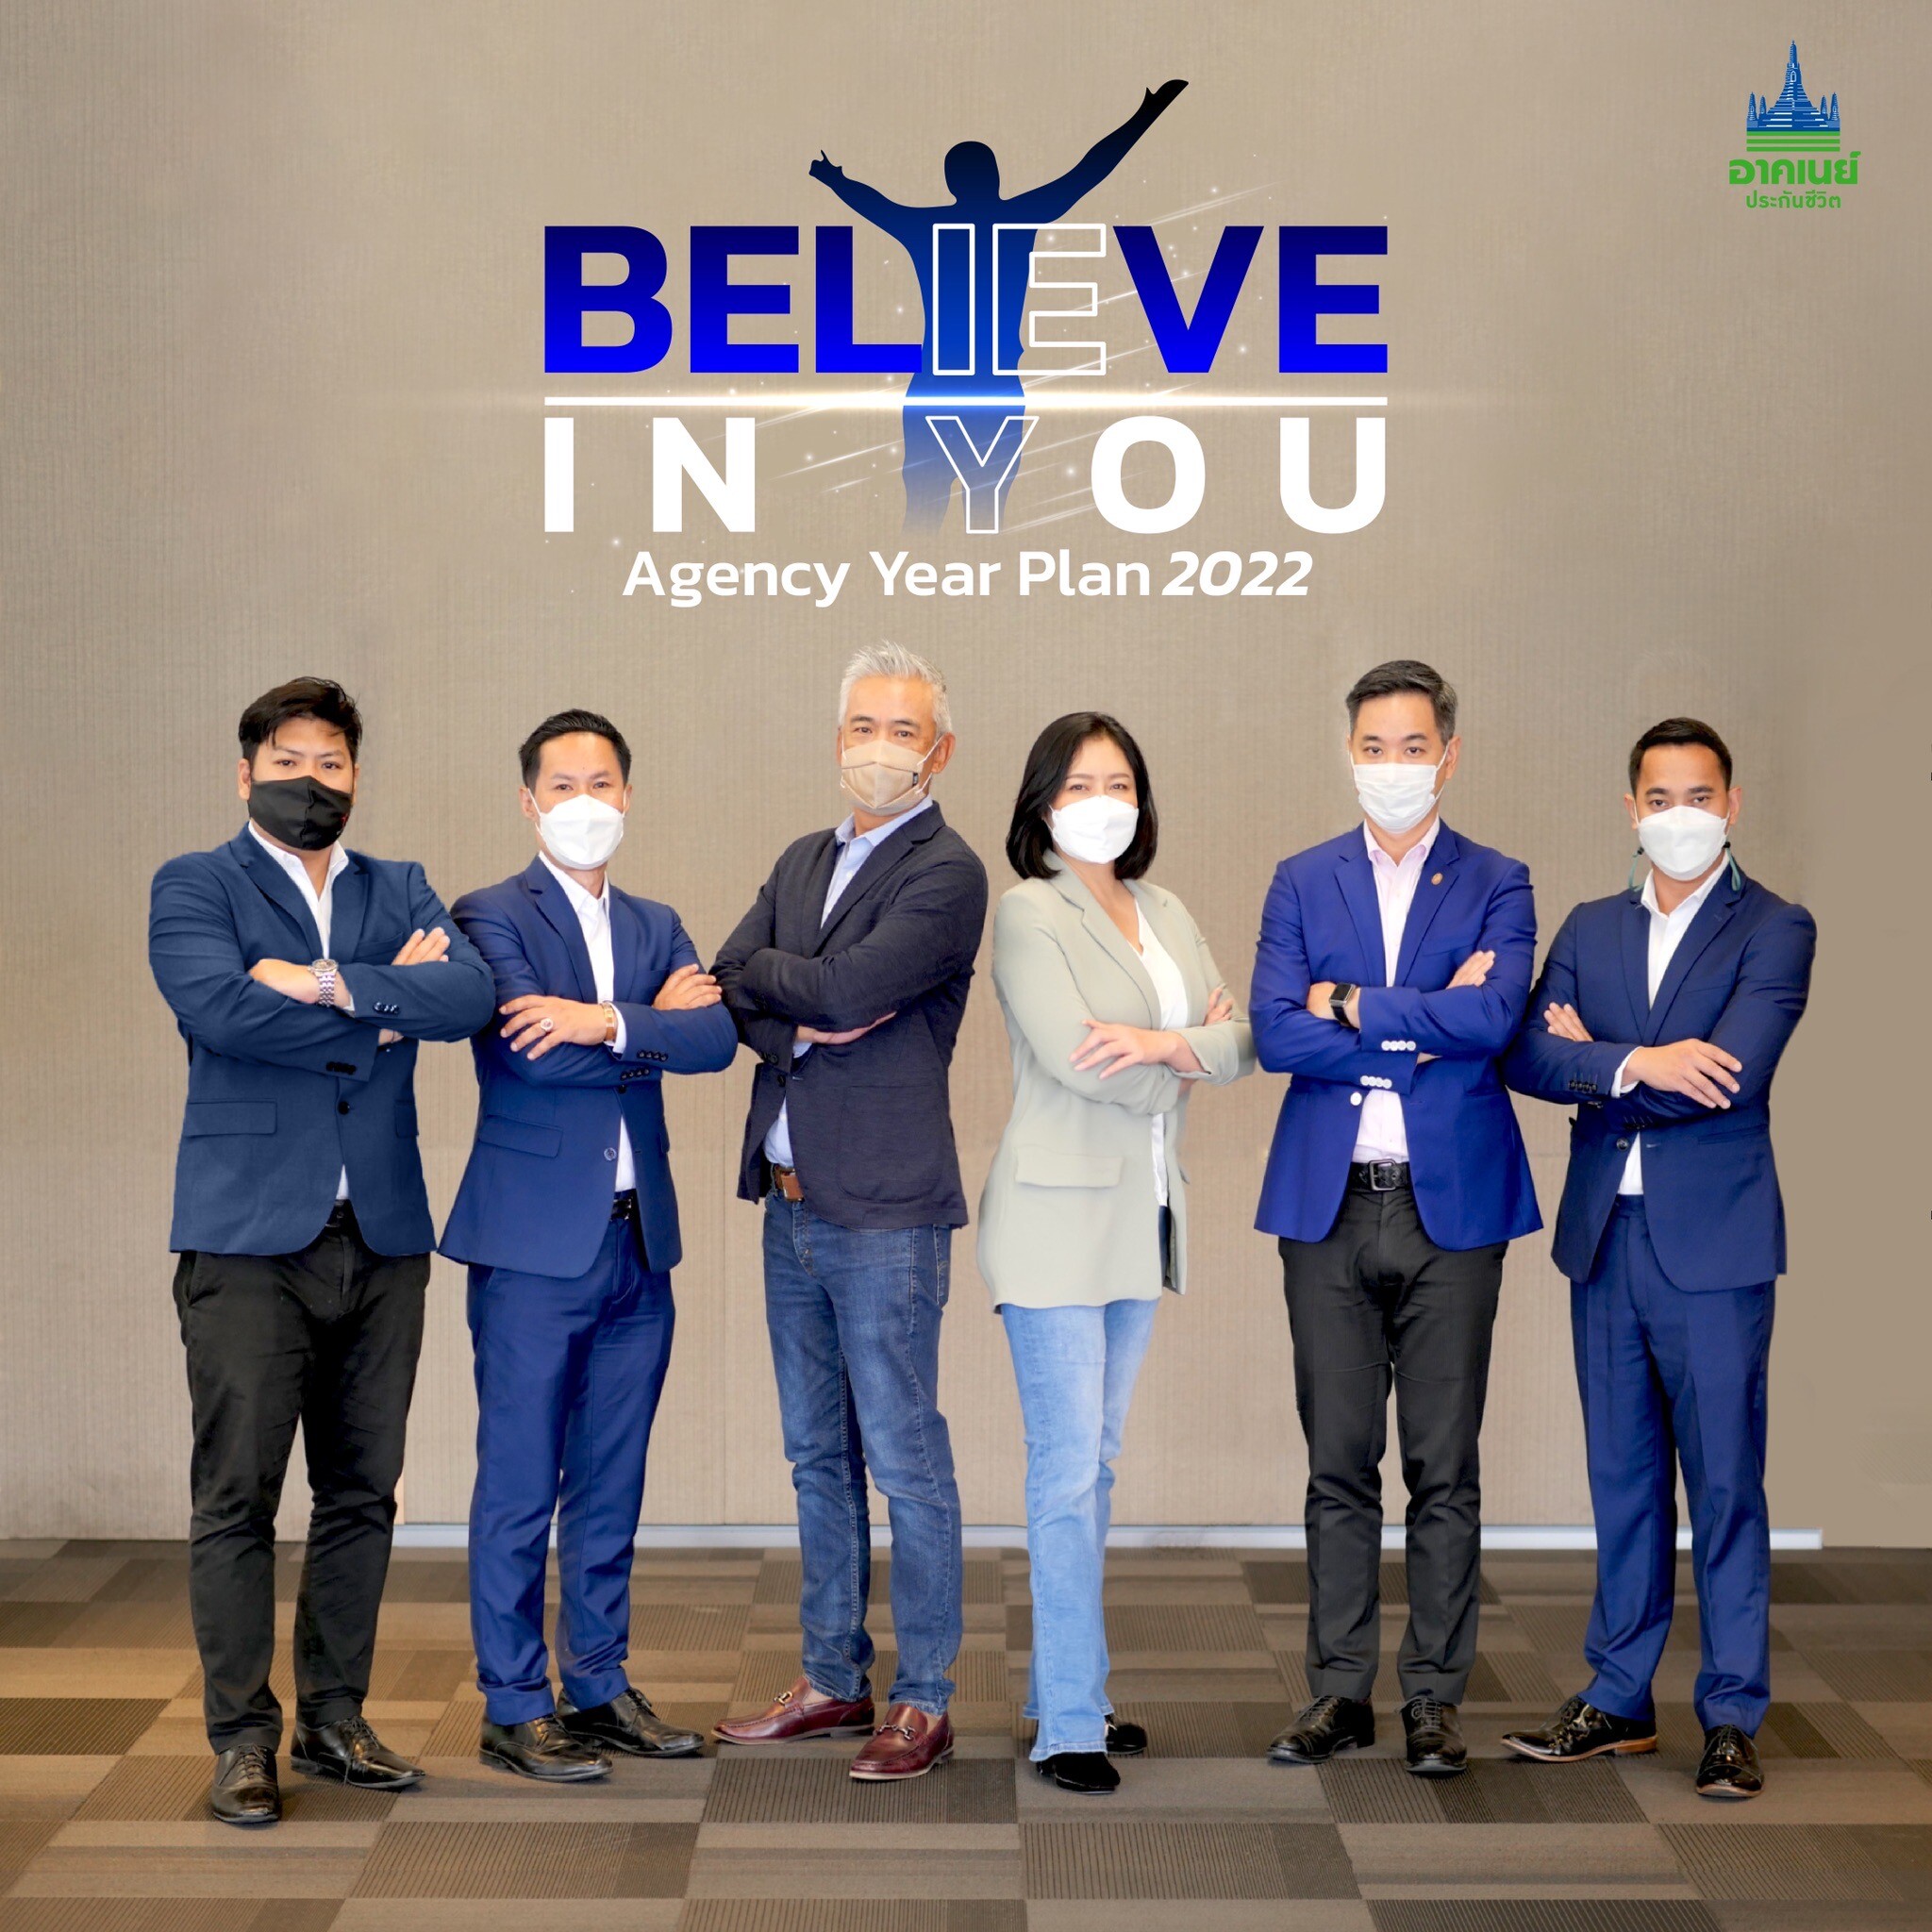 อาคเนย์ประกันชีวิต คิกออฟงาน Agency Year Plan 2022 ปลุกพลังทีมขาย ภายใต้แนวคิด "BELIEVE IN YOU"